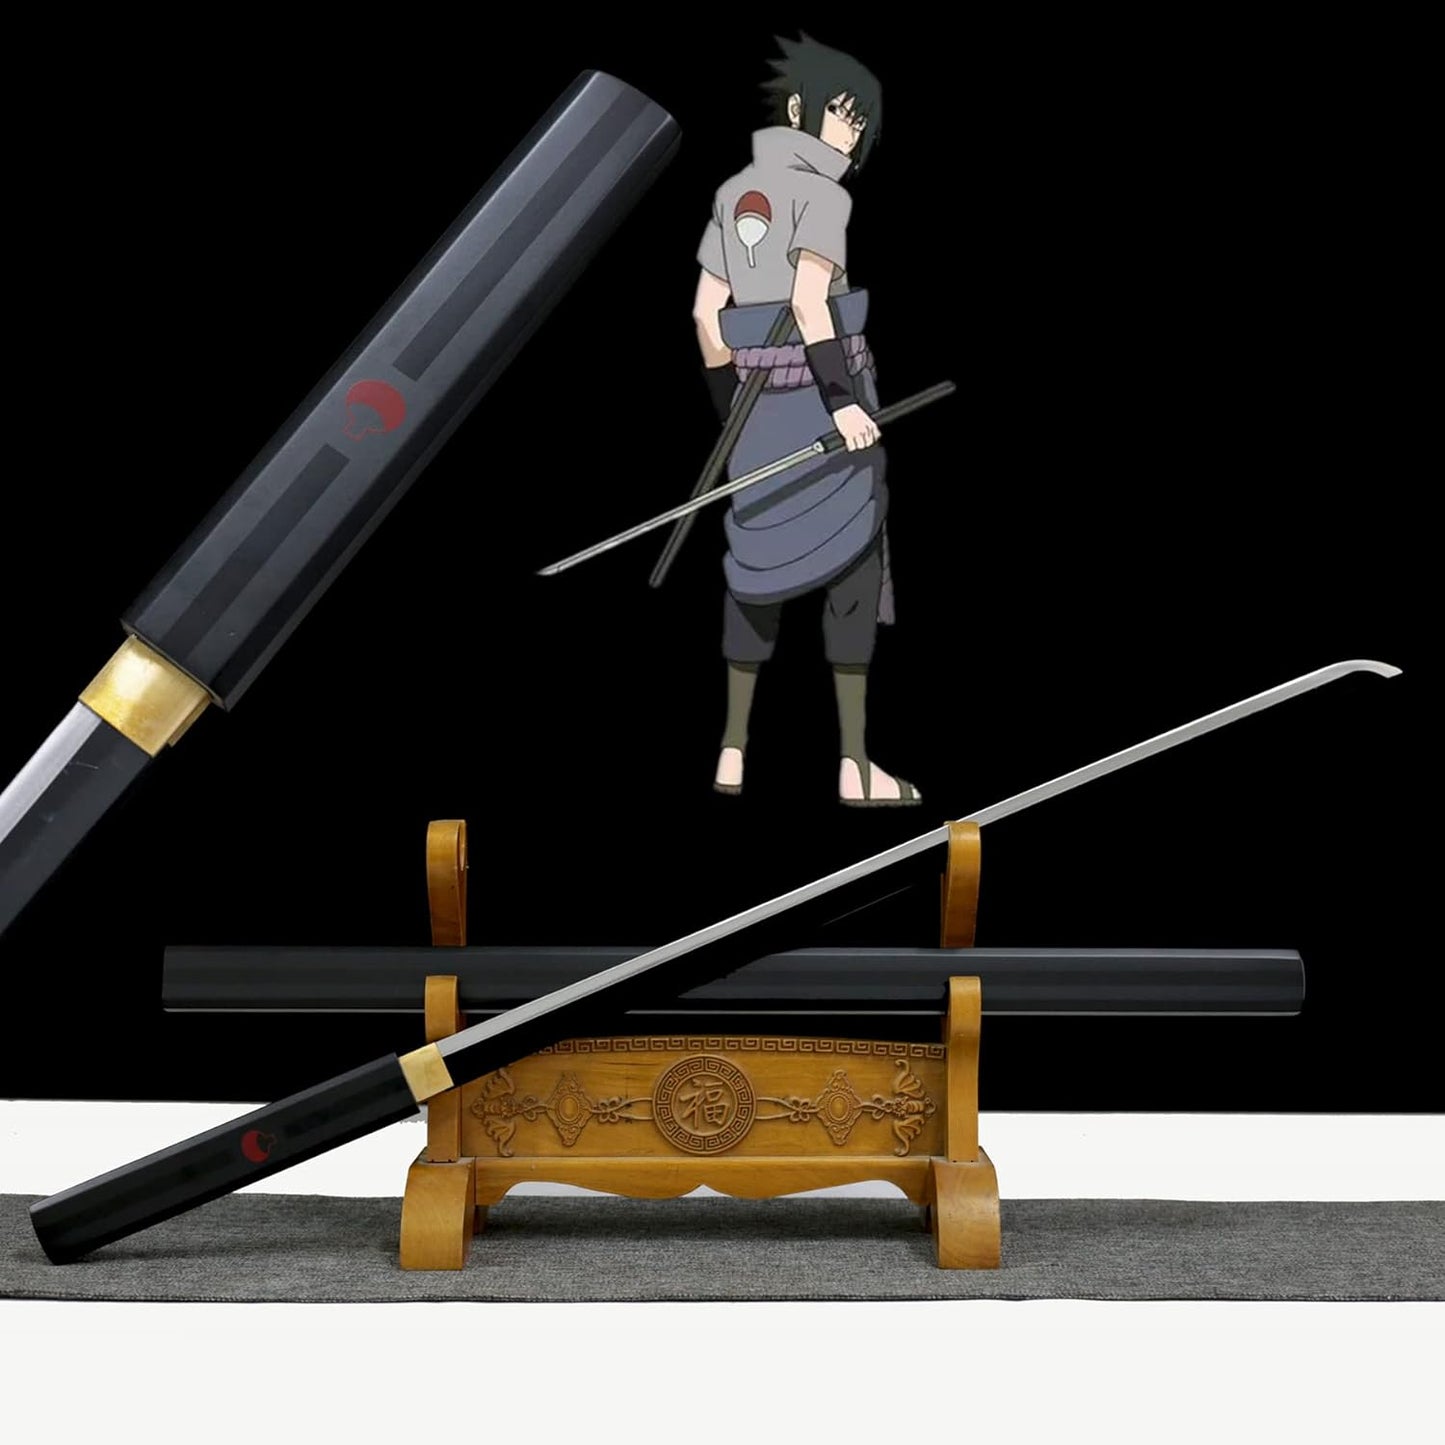 Naruto Sasuke Anime Cosplay Metal Sword 40" Not Sharp Katana Replica Weapons - Black